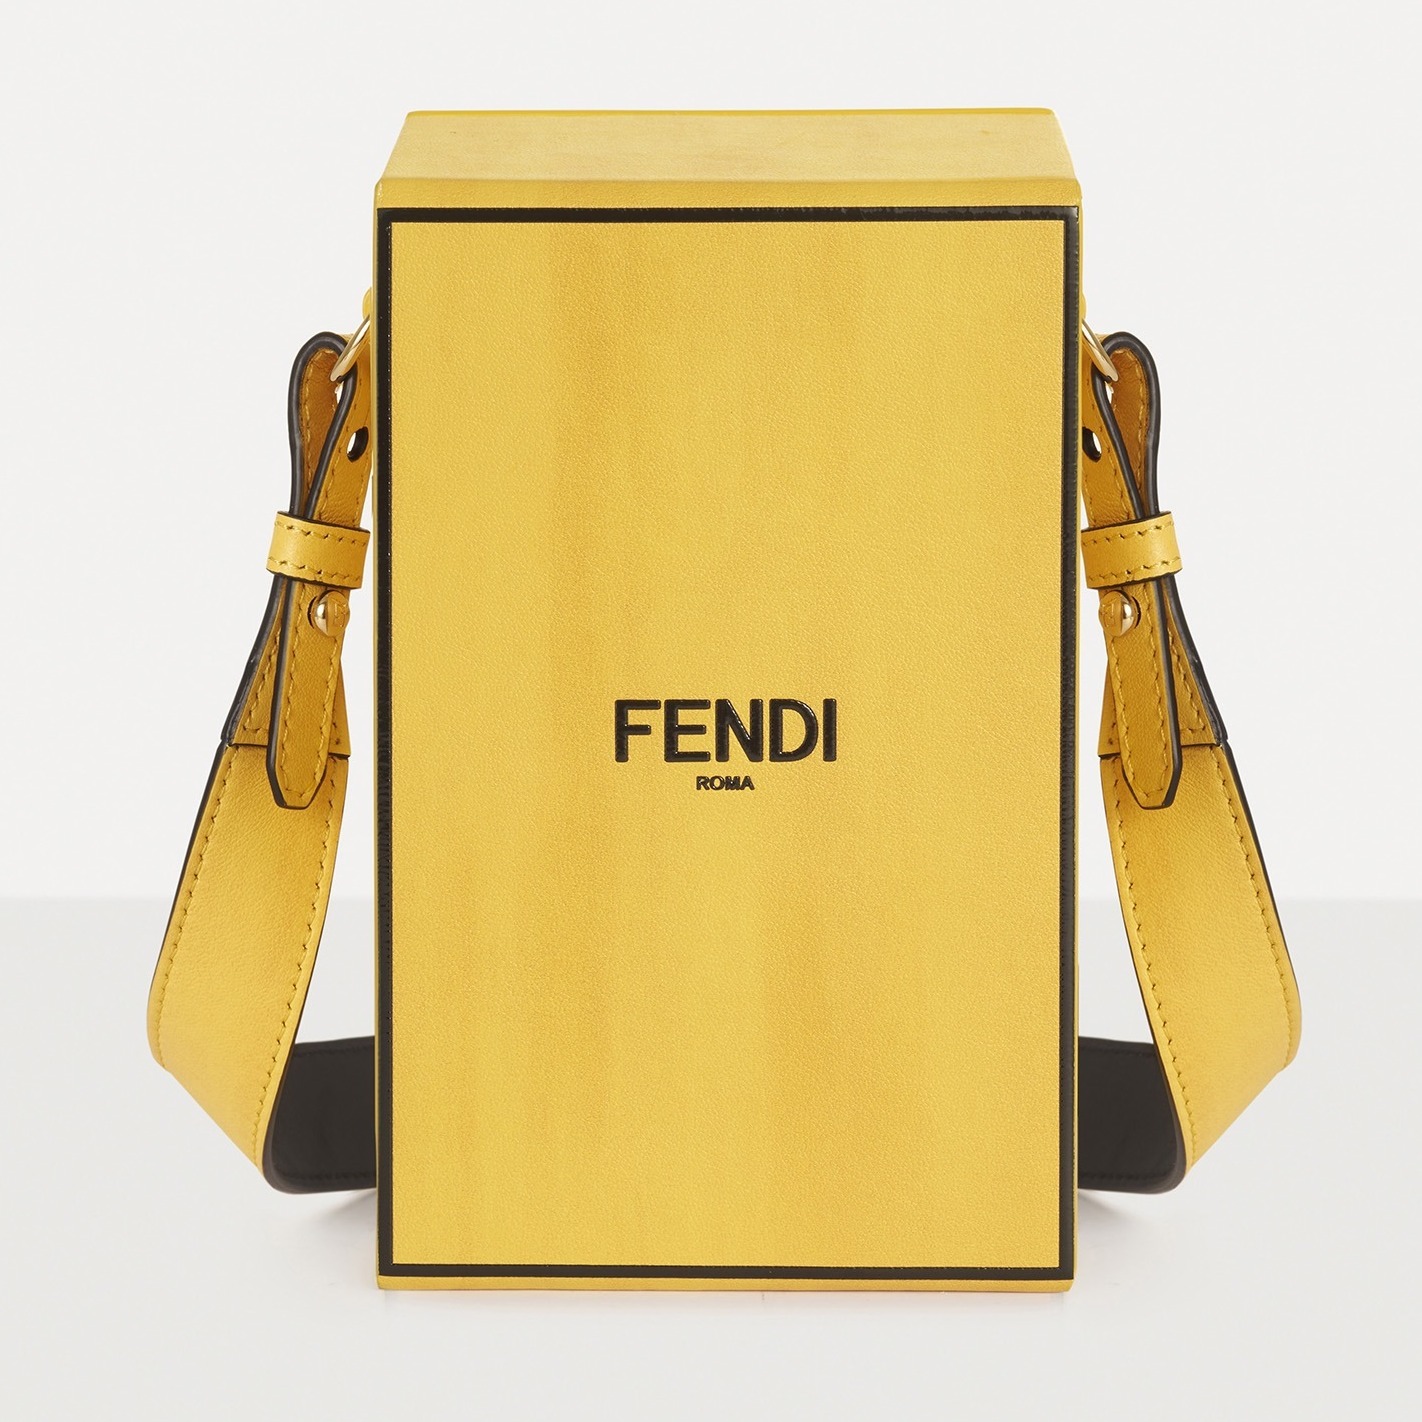 2020年FENDI Vertical Box 盒子包2022年回收价格大概几折